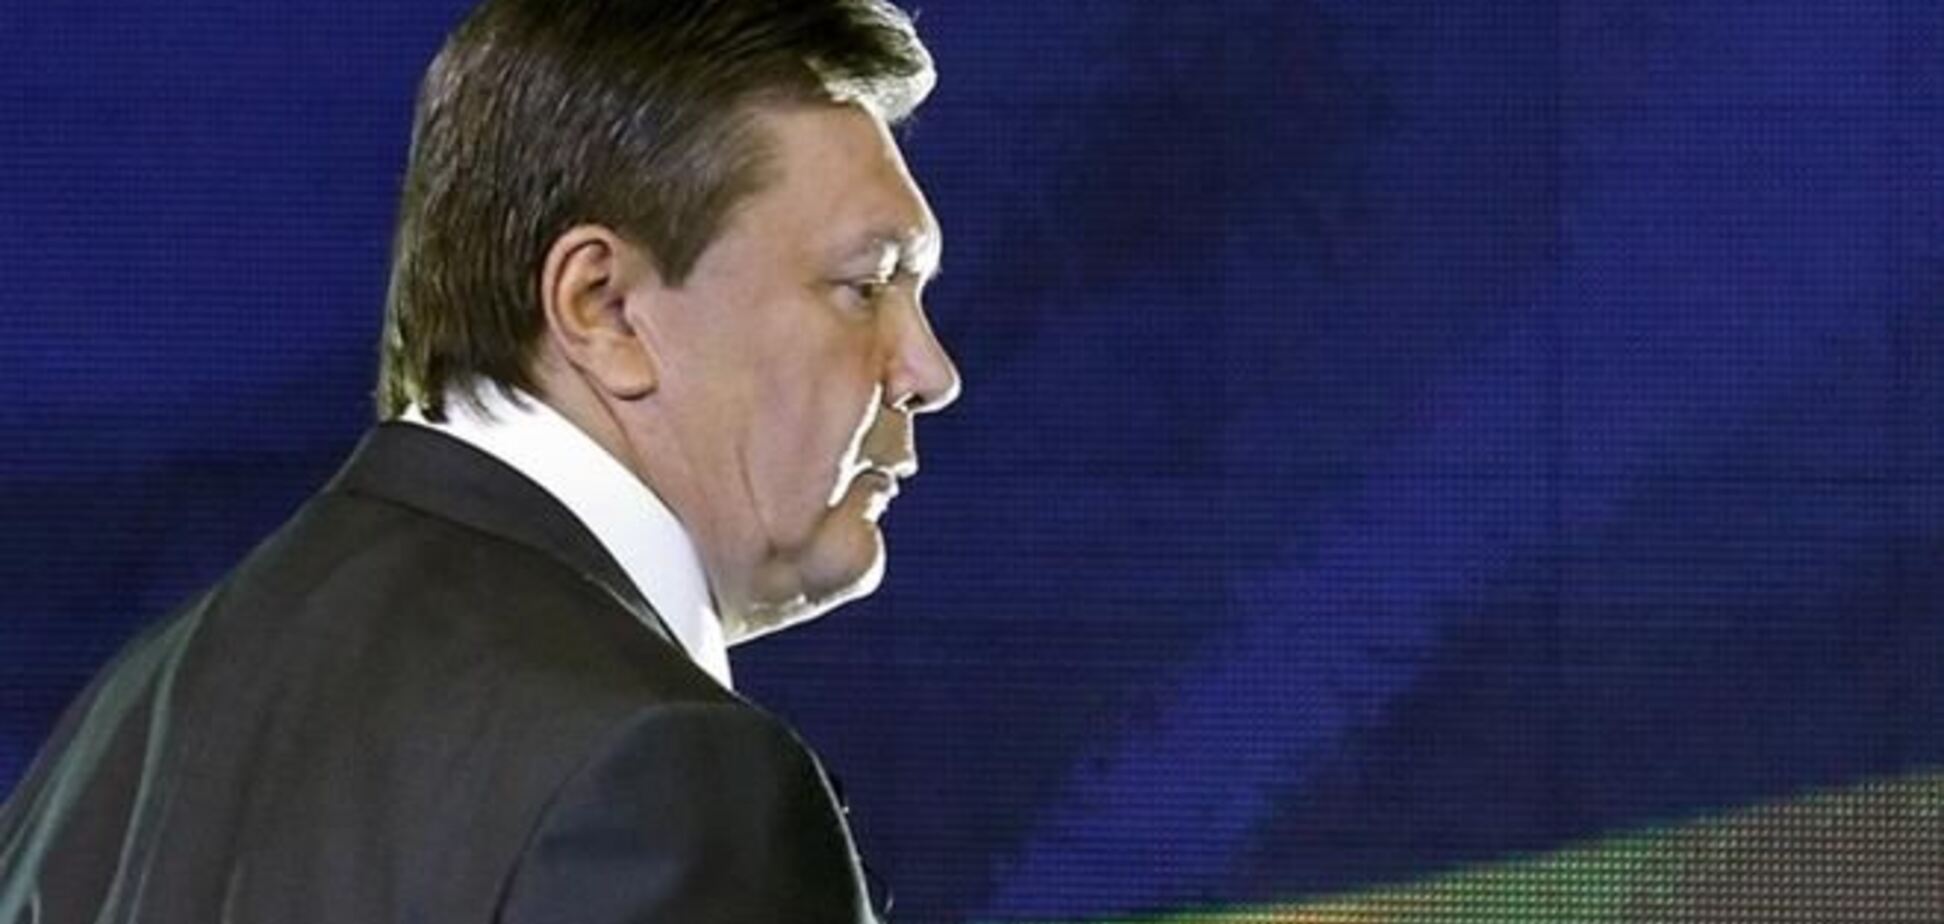 Интерпол получил официальный запрос на задержание Януковича